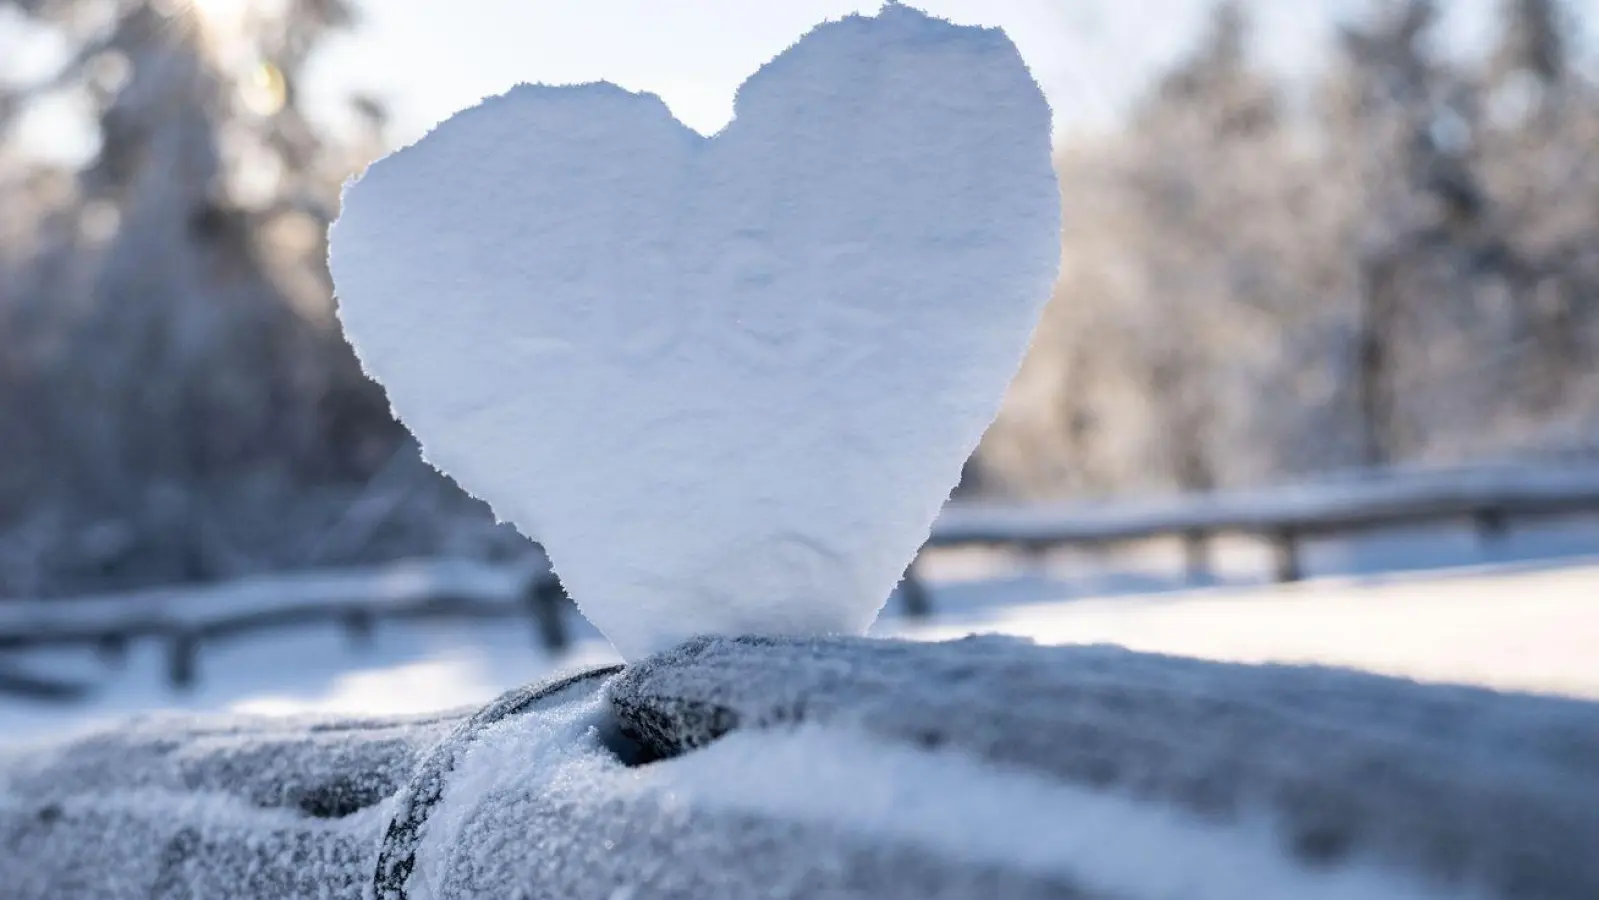 Anstrengung bei Kälte belastet das Herz-Kreislauf-System. Herzkranke sollten im Winter besonders darauf achten sich körperlich nicht zu sehr anzustrengen. (Foto: Frank Rumpenhorst/dpa/dpa-tmn)